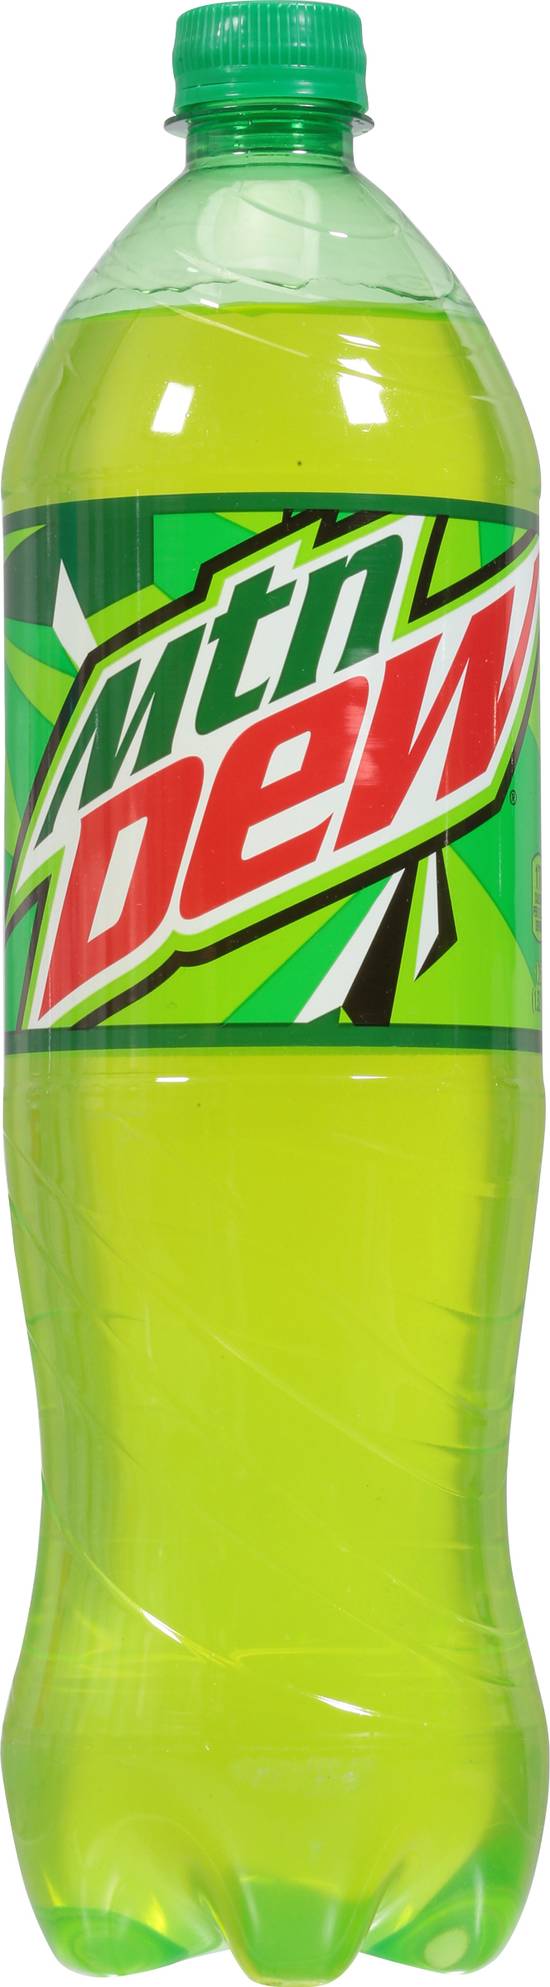 Mtn Dew Soda (1.25 L) (citrus)